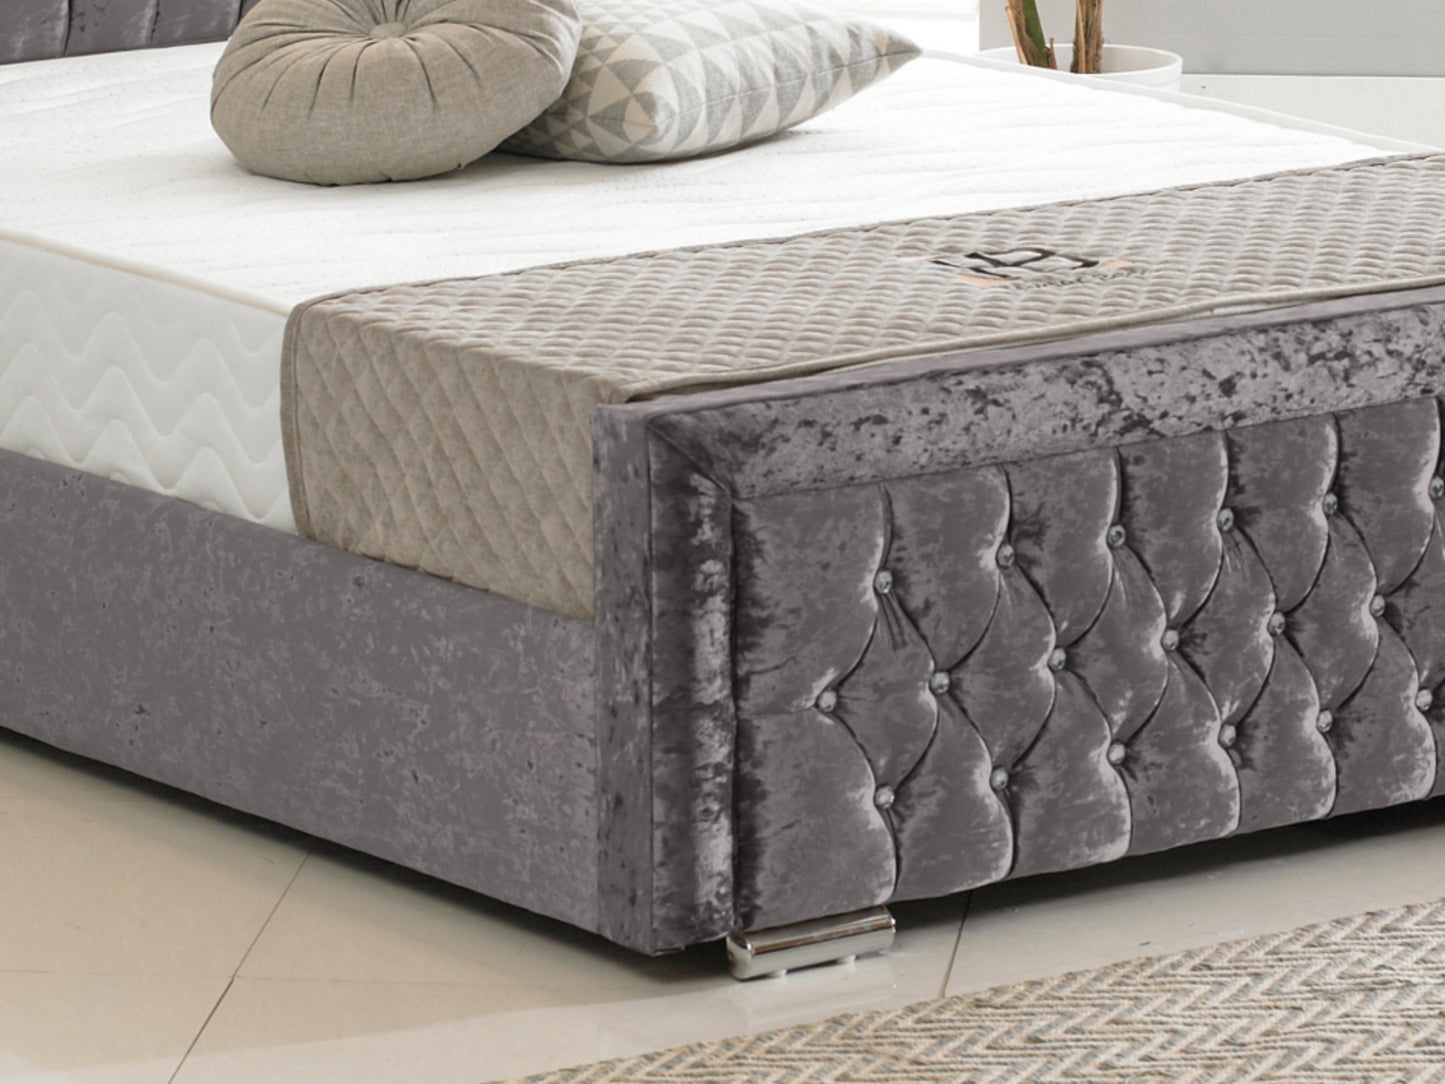 Sandringham Luxury Bed Frame in Crushed Velvet Charcoal